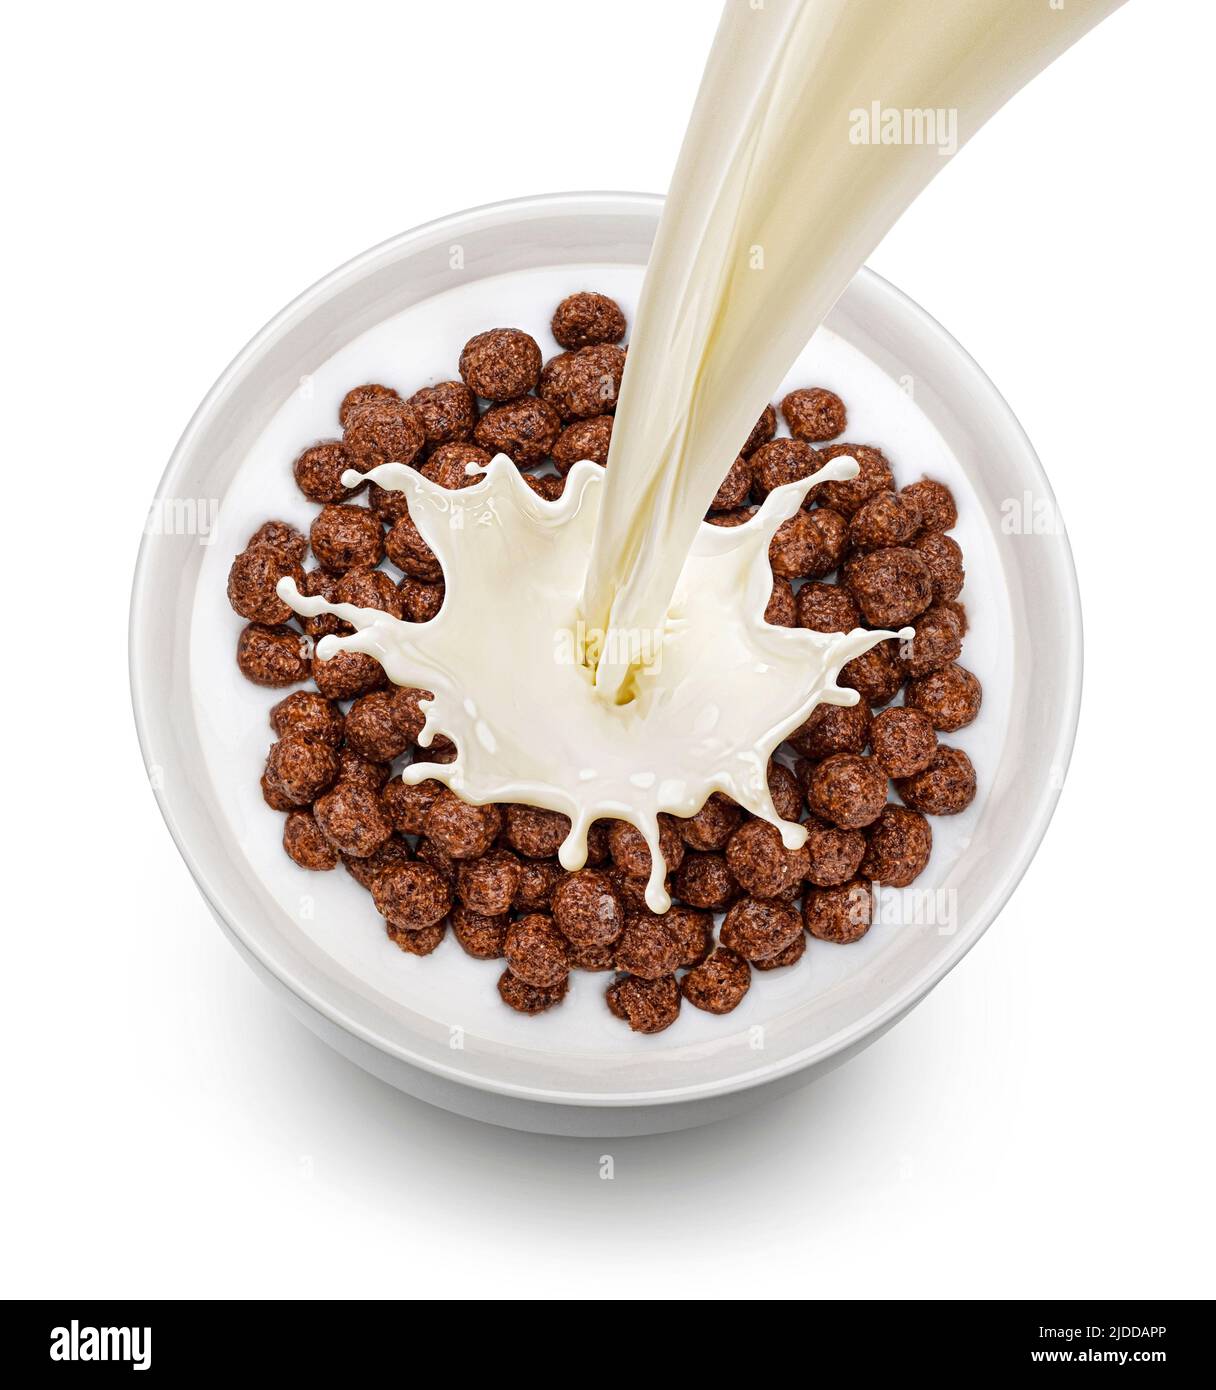 Boules de maïs au chocolat avec lait isolé sur fond blanc, vue du dessus Banque D'Images